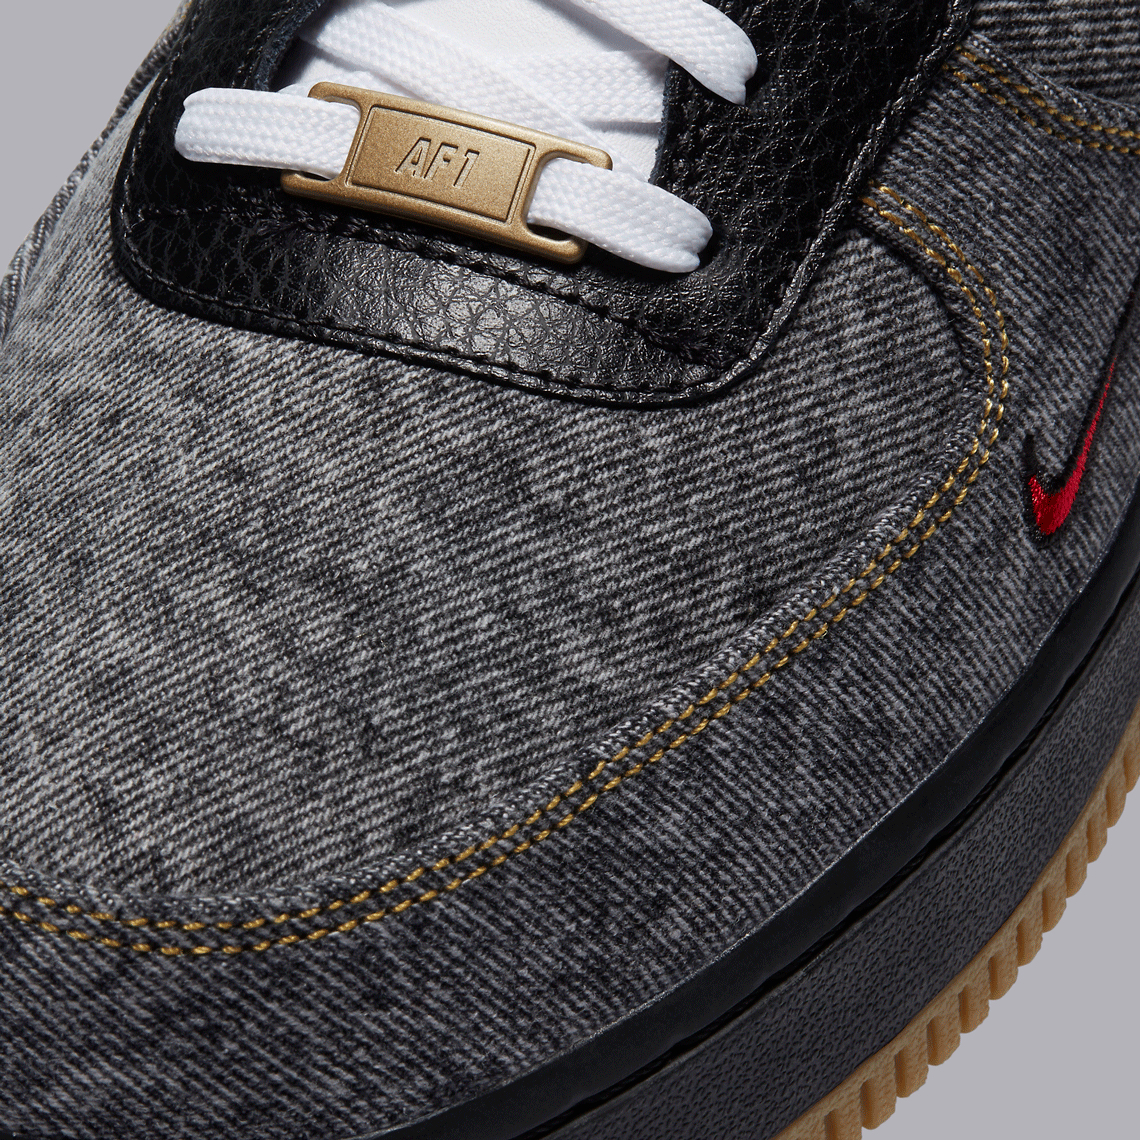 Nike Air Force 1 Low Remix Black - DB1964-001 Size 8 Men's Sneaker 